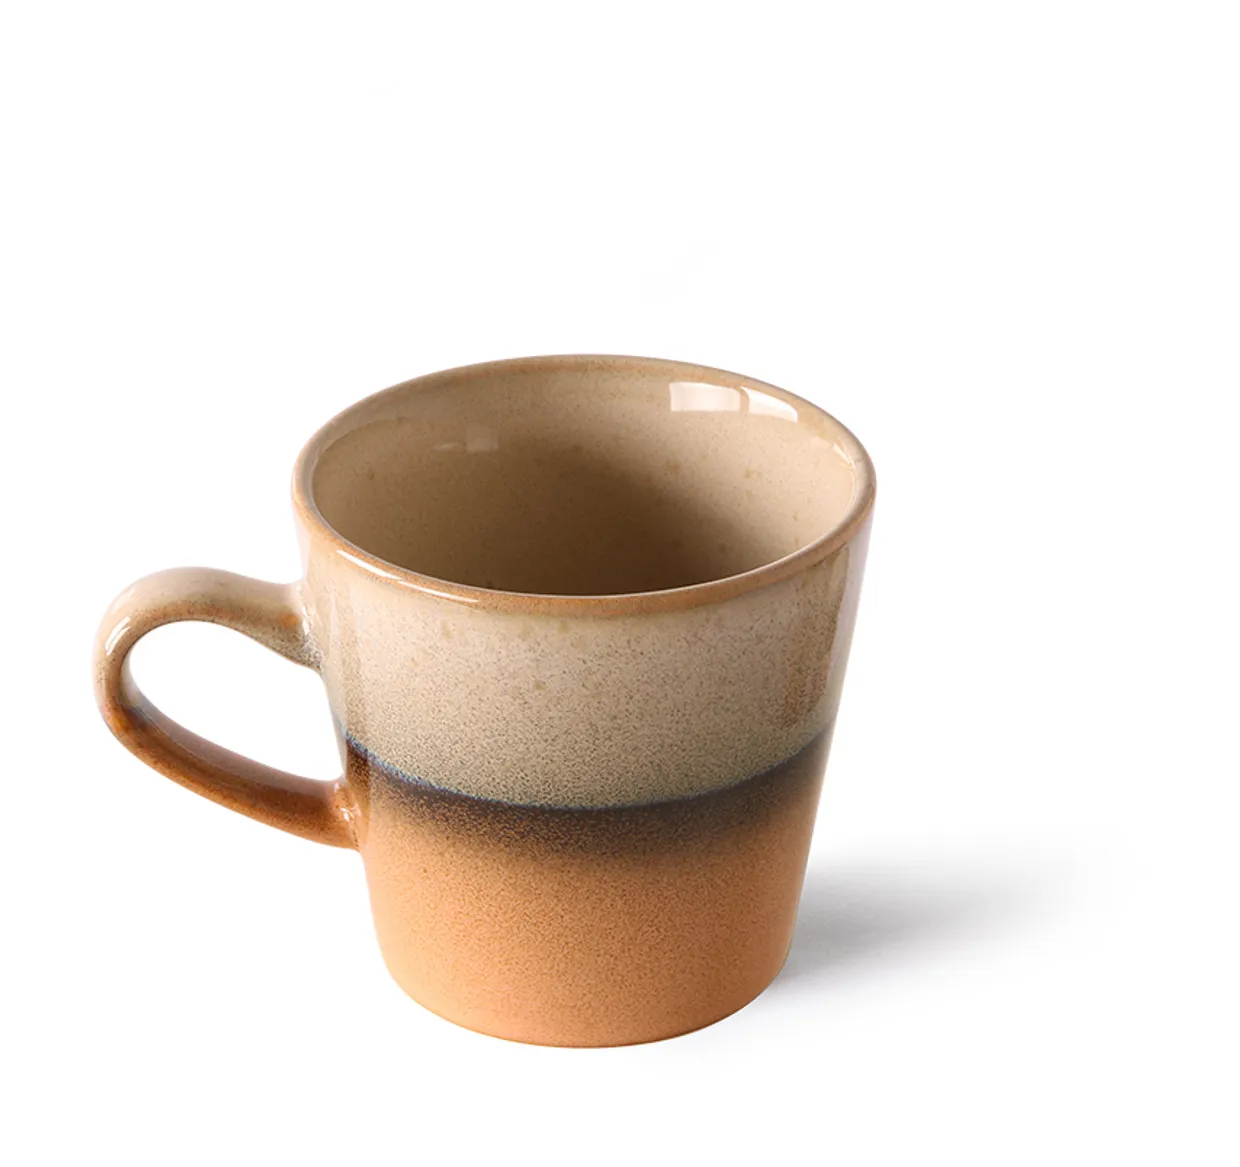 70s ceramics: americano mug, tornado